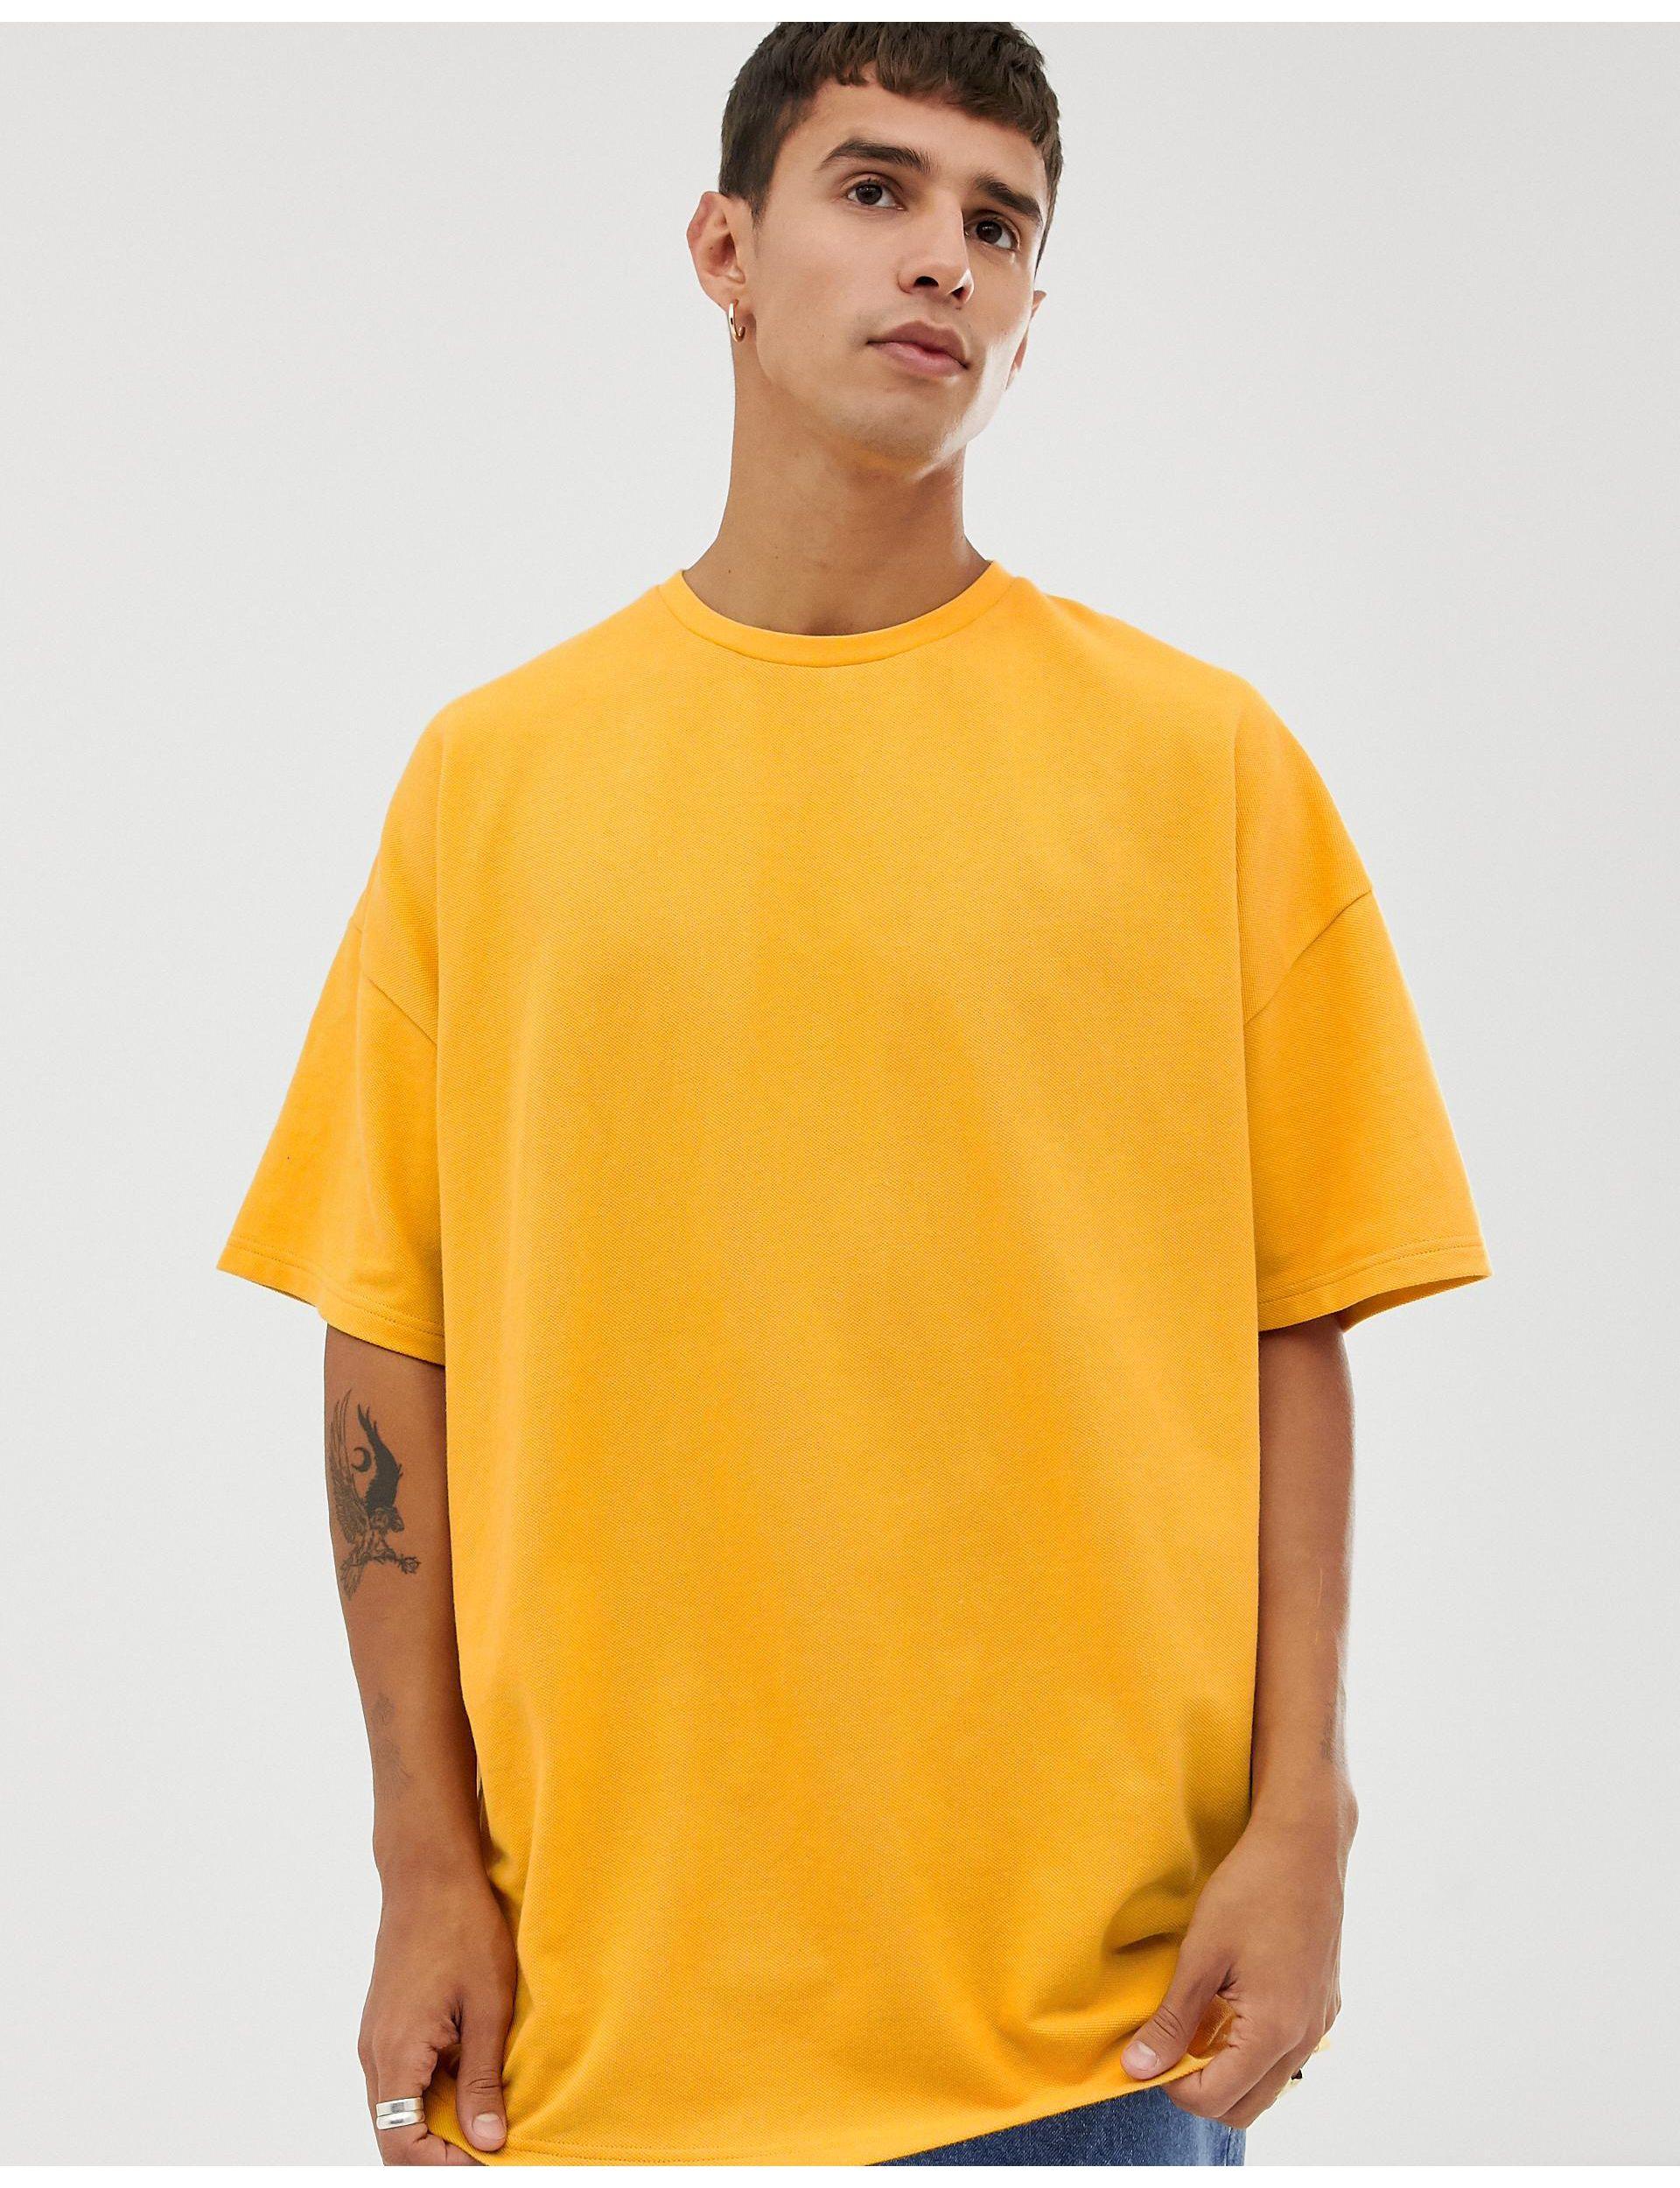 mustard yellow oversized shirt